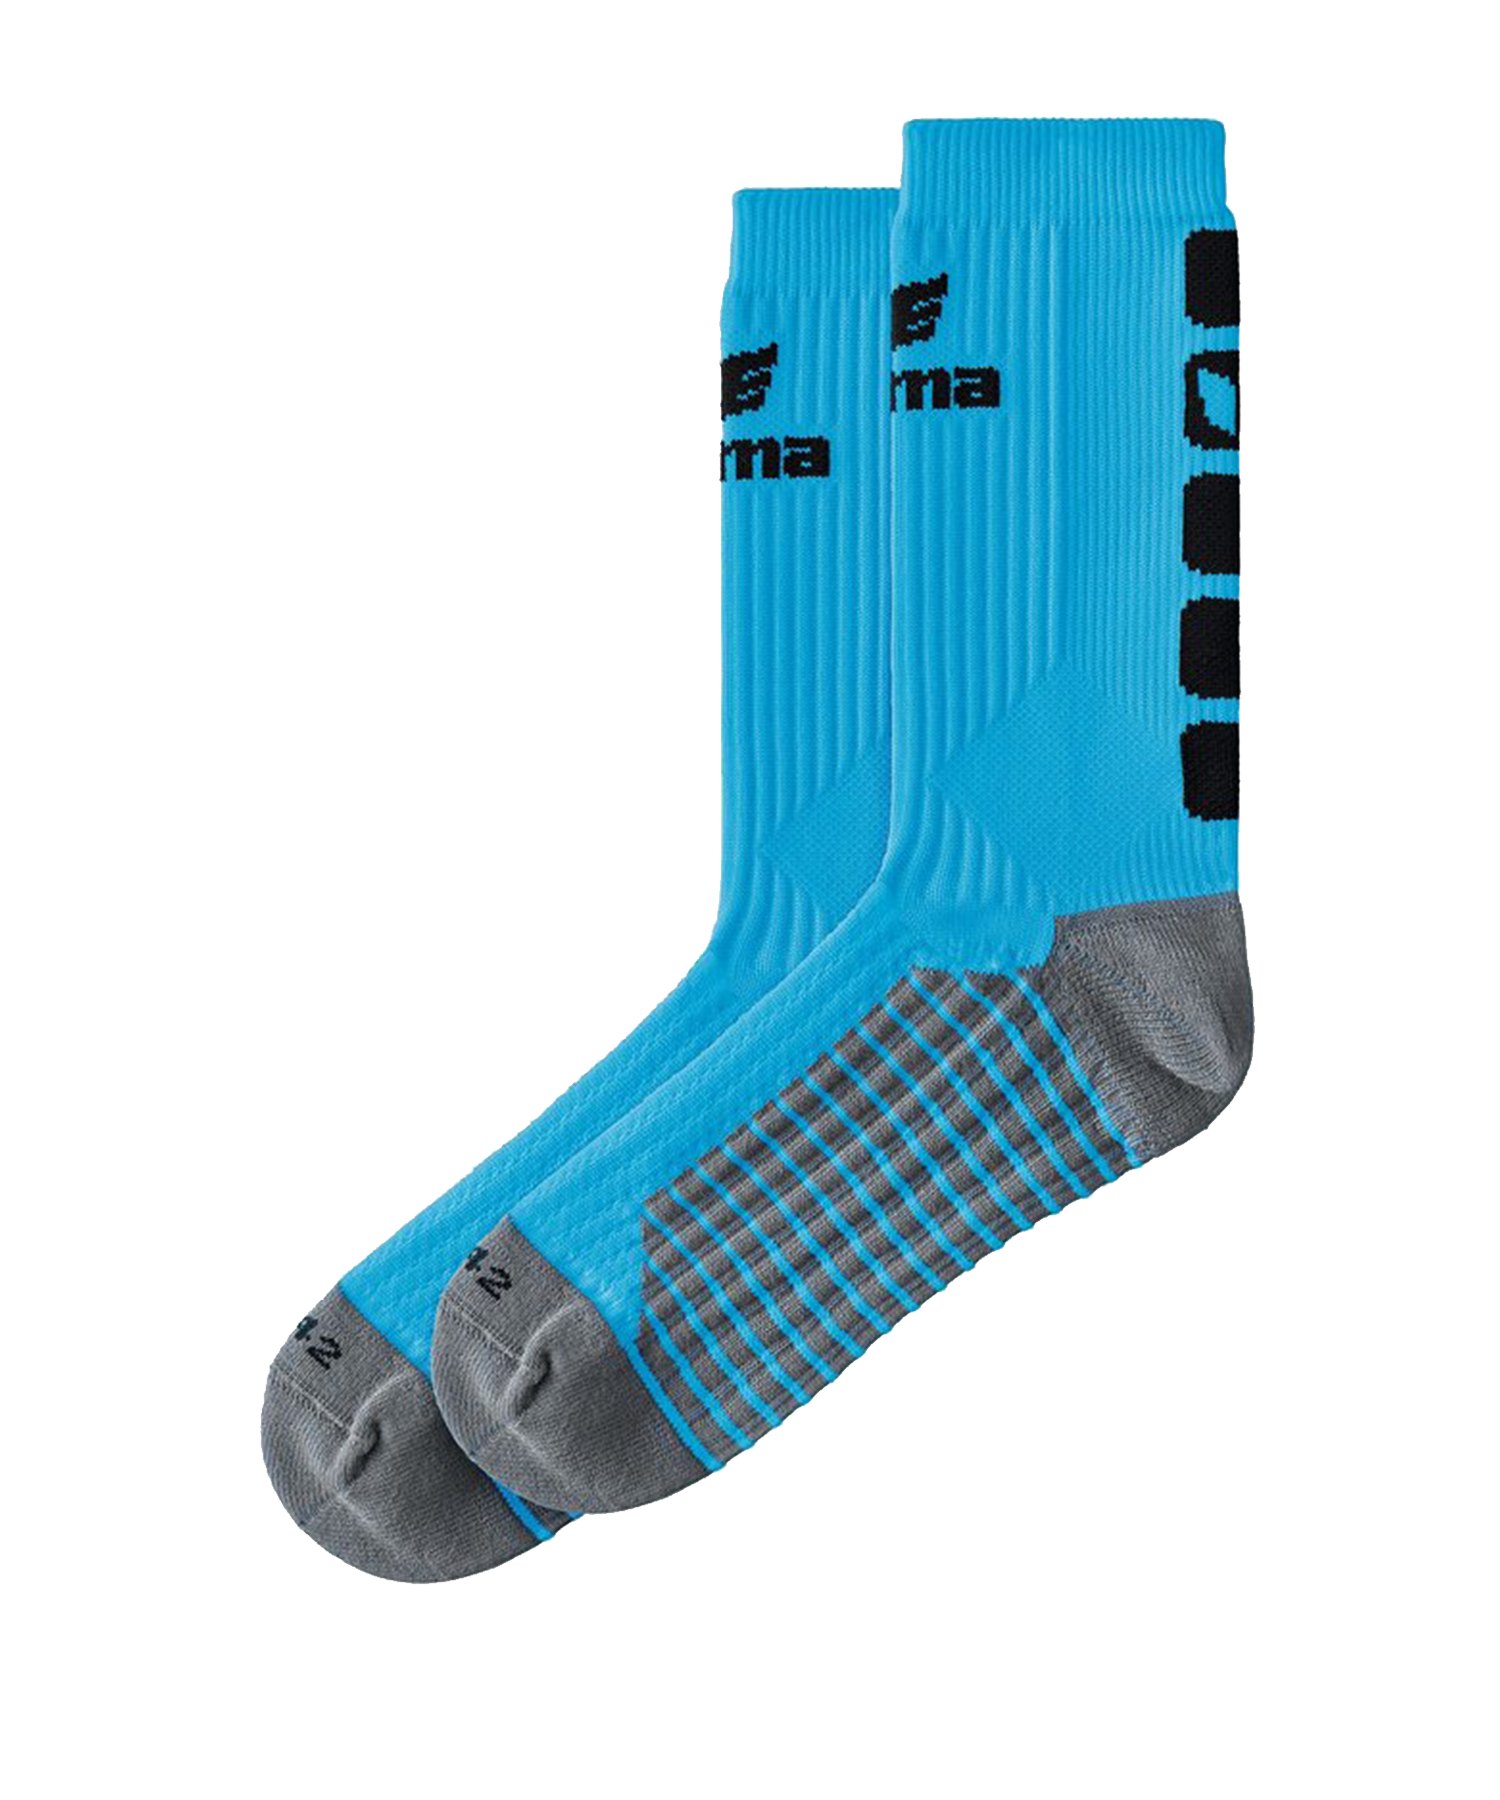 Erima CLASSIC 5-C Socken Blau Schwarz - Blau